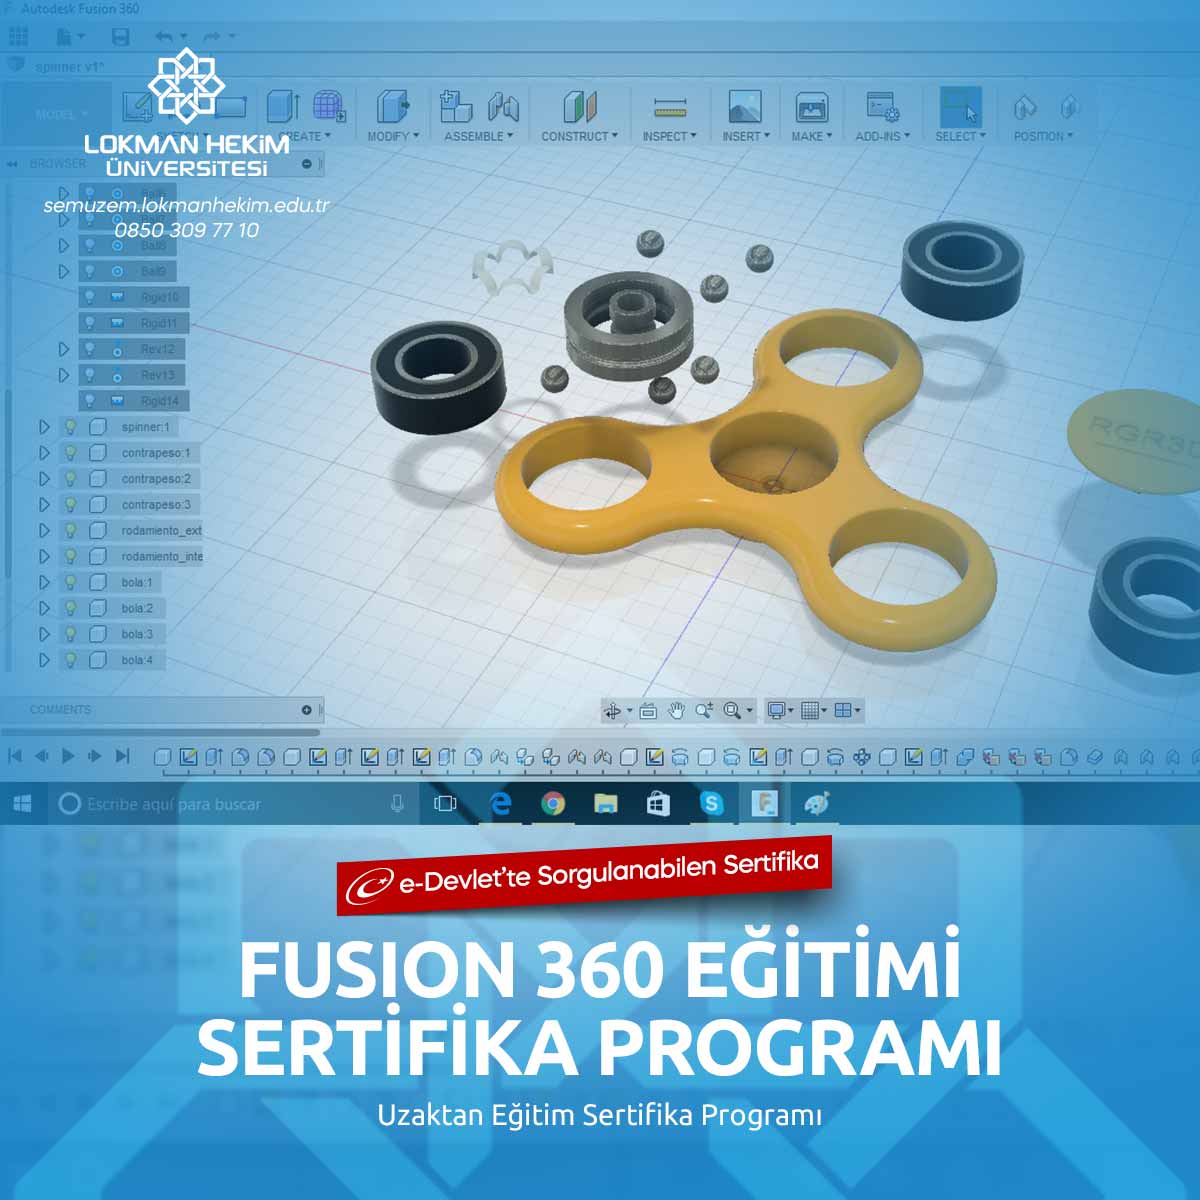 Fusion 360 Eğitimi Nedir